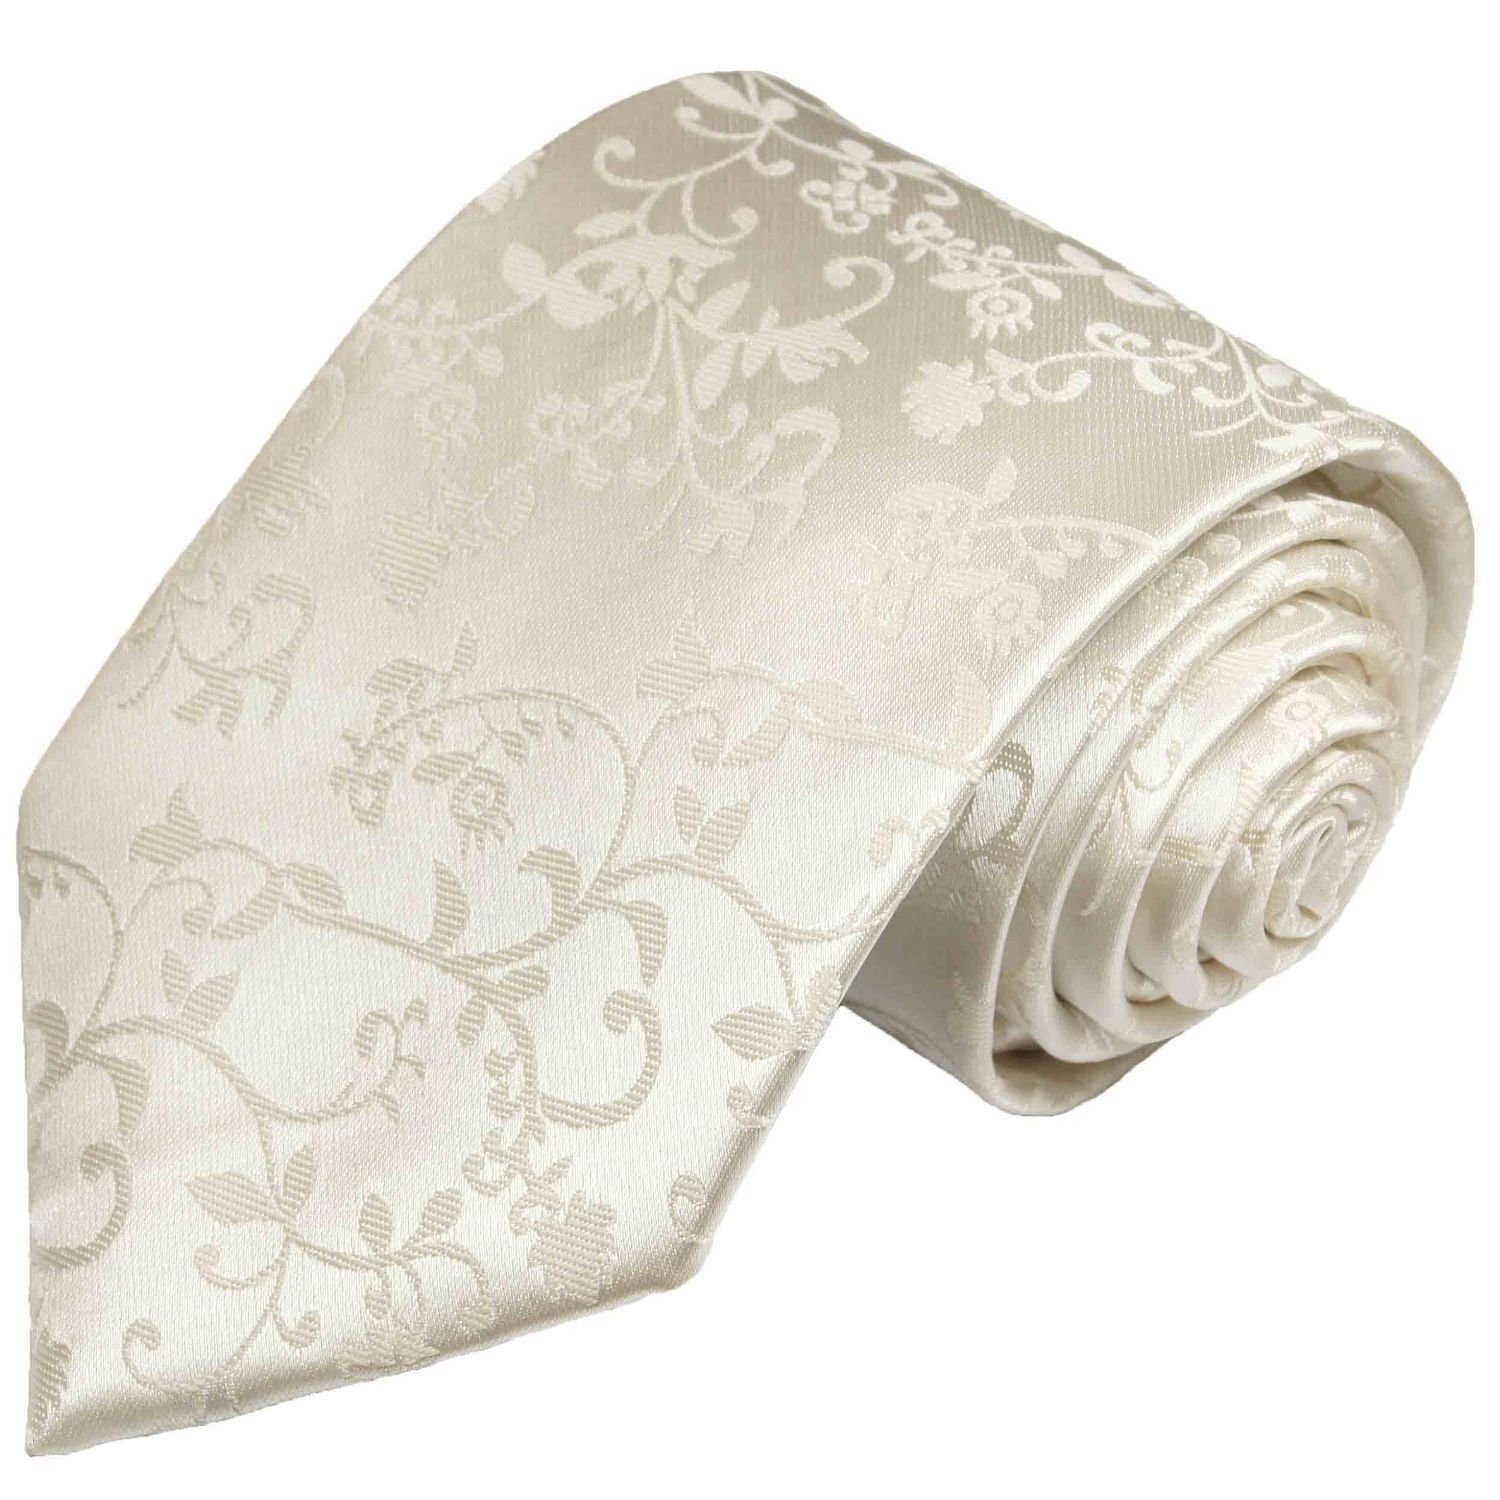 Paul Malone Krawatte Herren Hochzeitskrawatte floral 100% Seide Bräutigam Hochzeit Schlips Breit (8cm), ivory 930